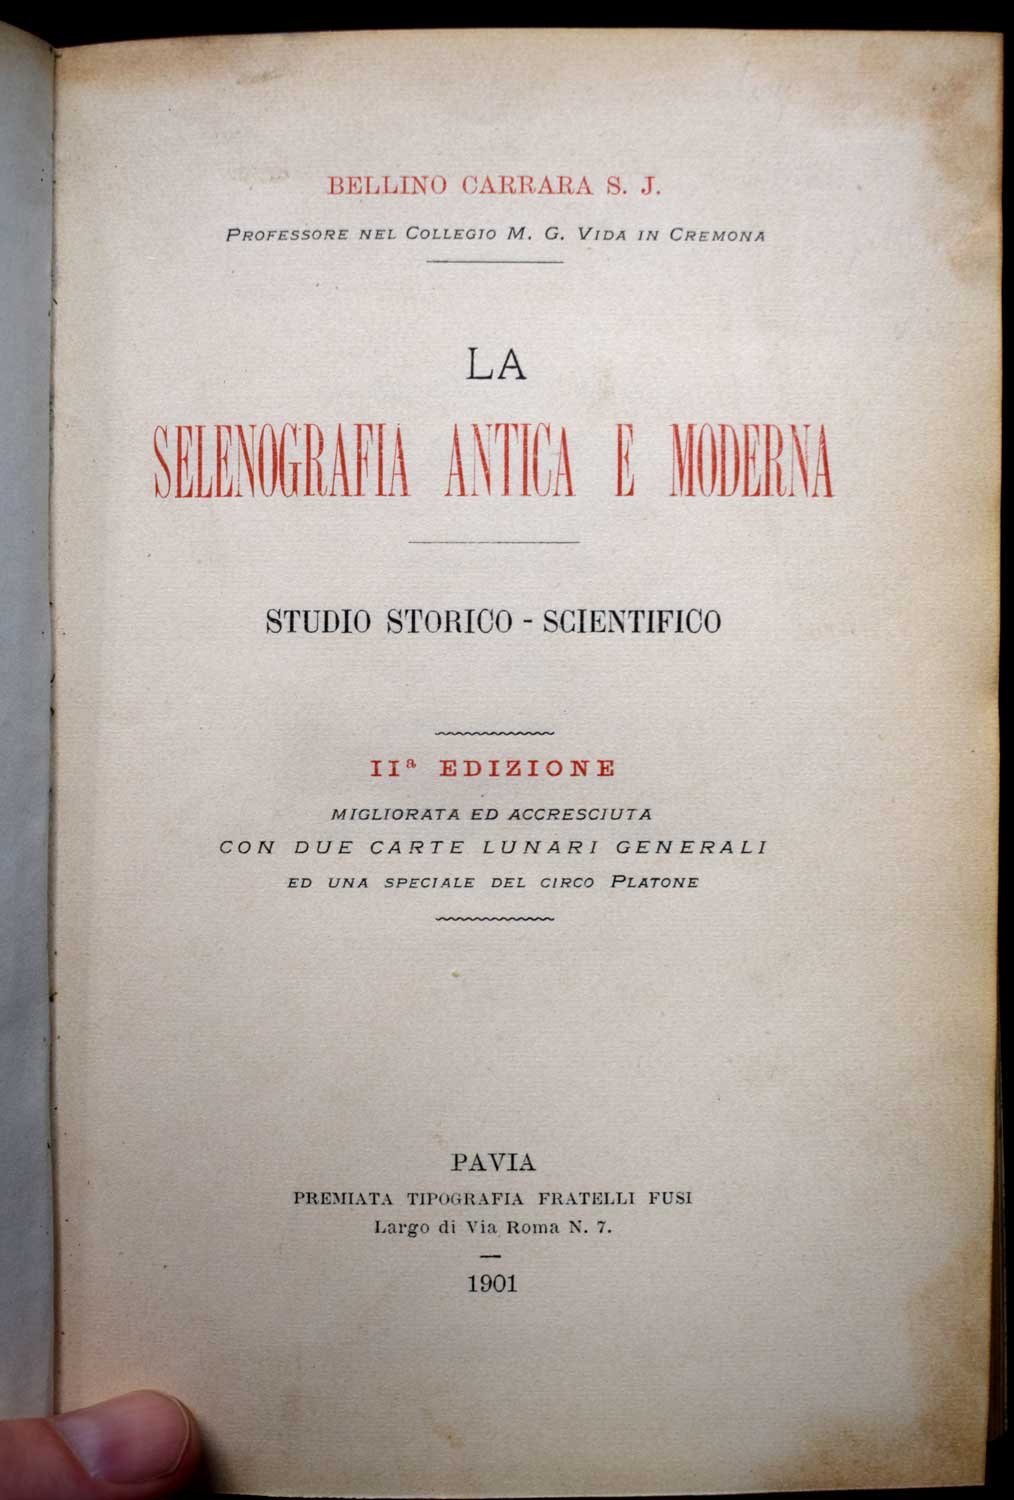 La Selenografia Antica e Modena